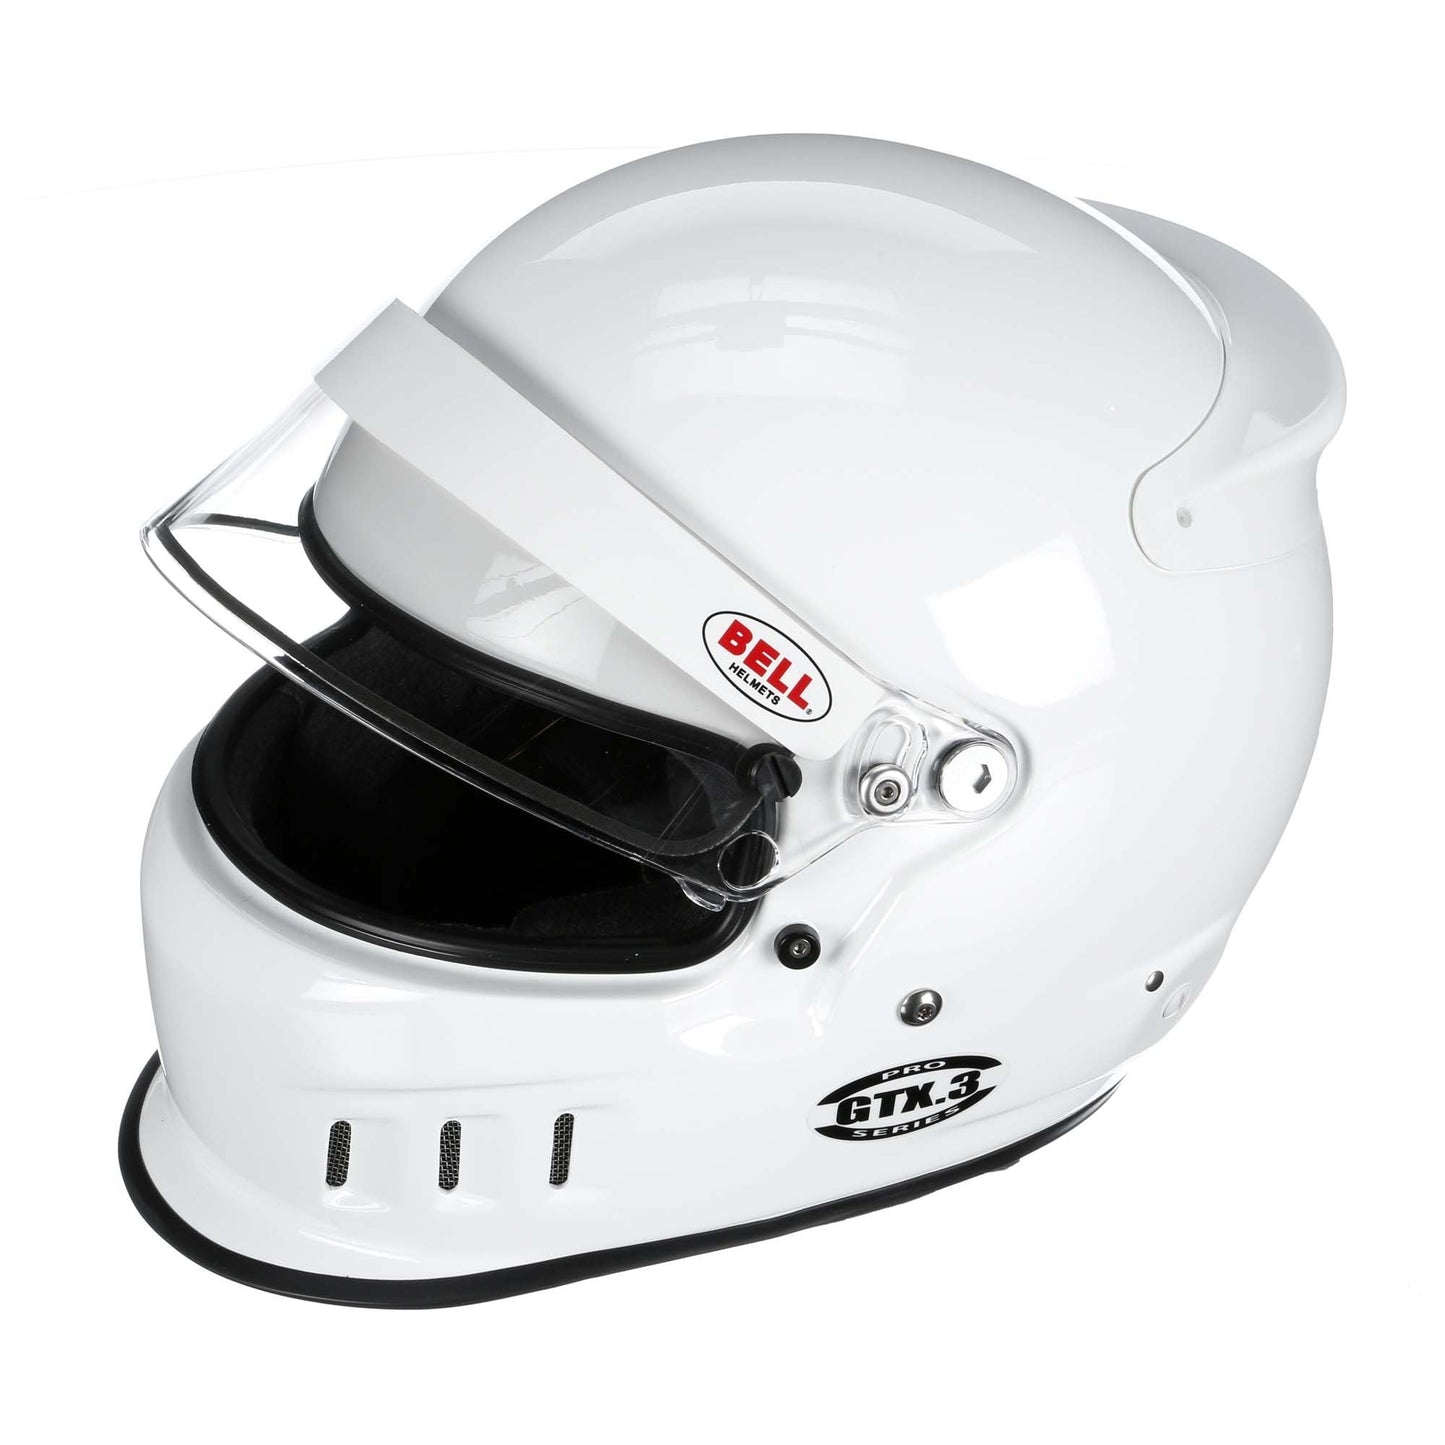 Bell GTX.3 SA2020/FIA8859 Helmet